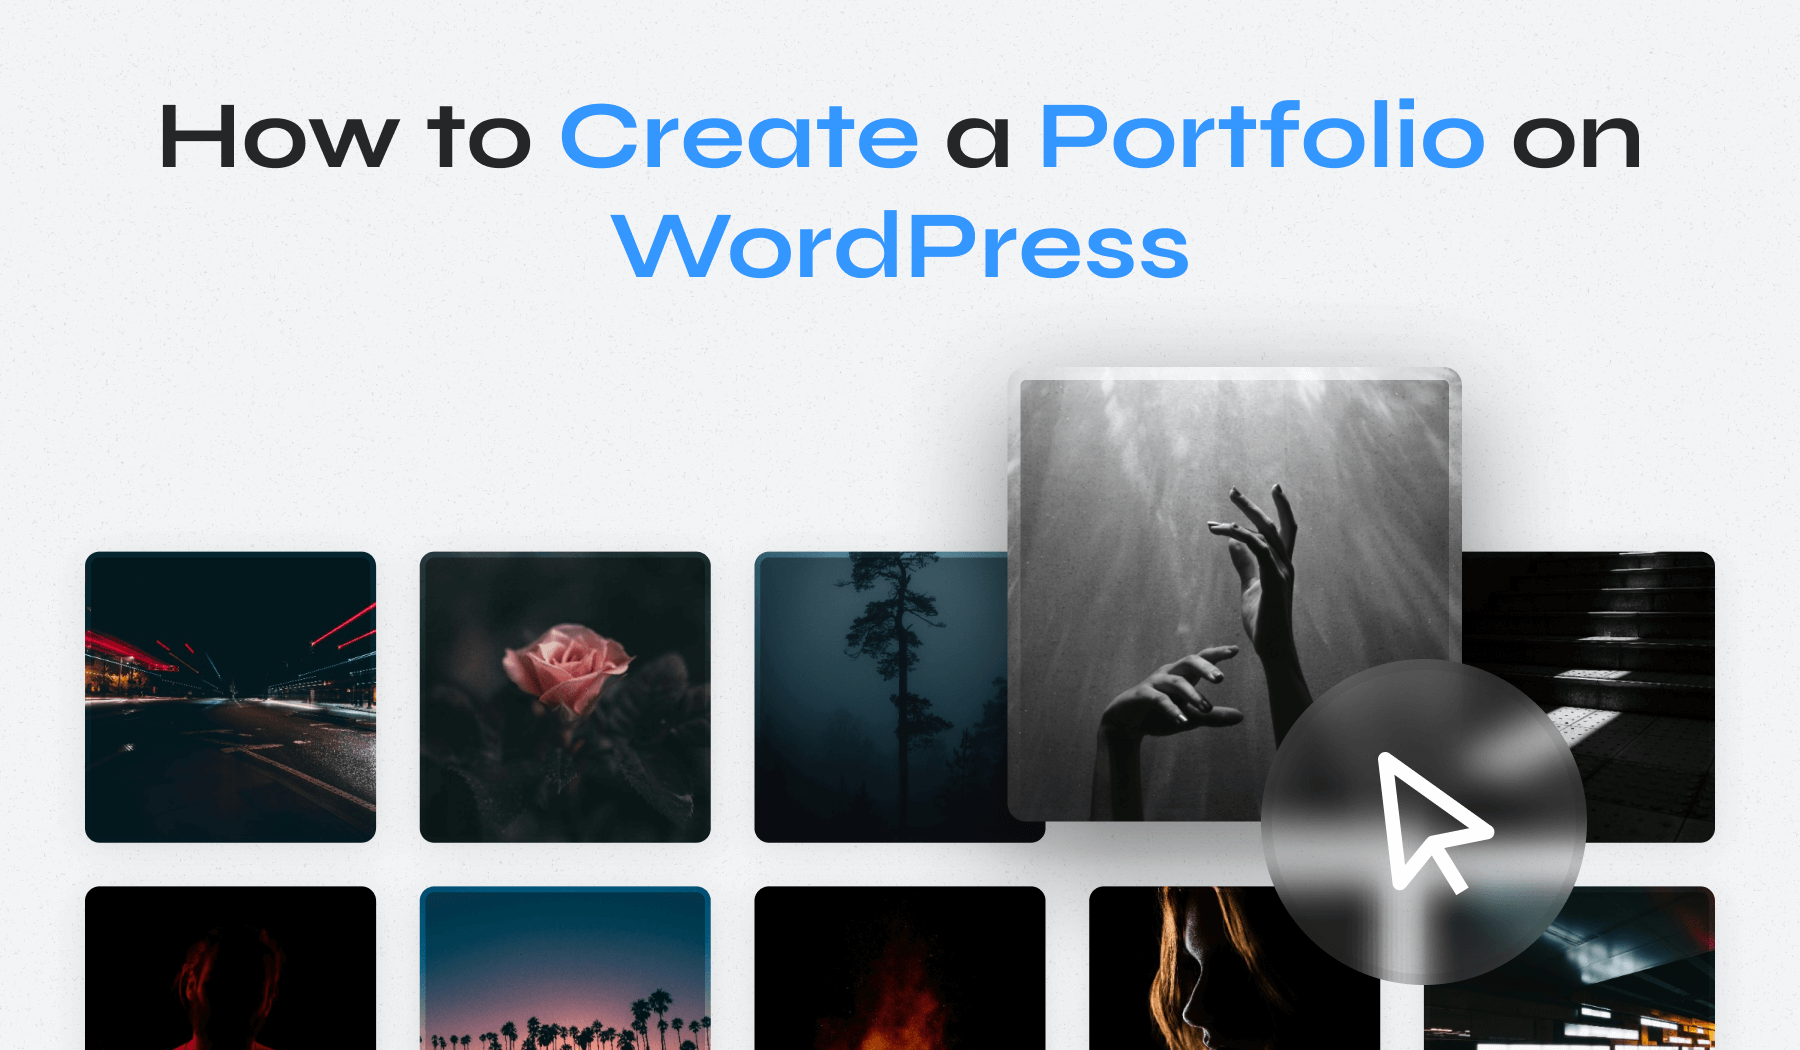 How to Create a Portfolio on WordPress